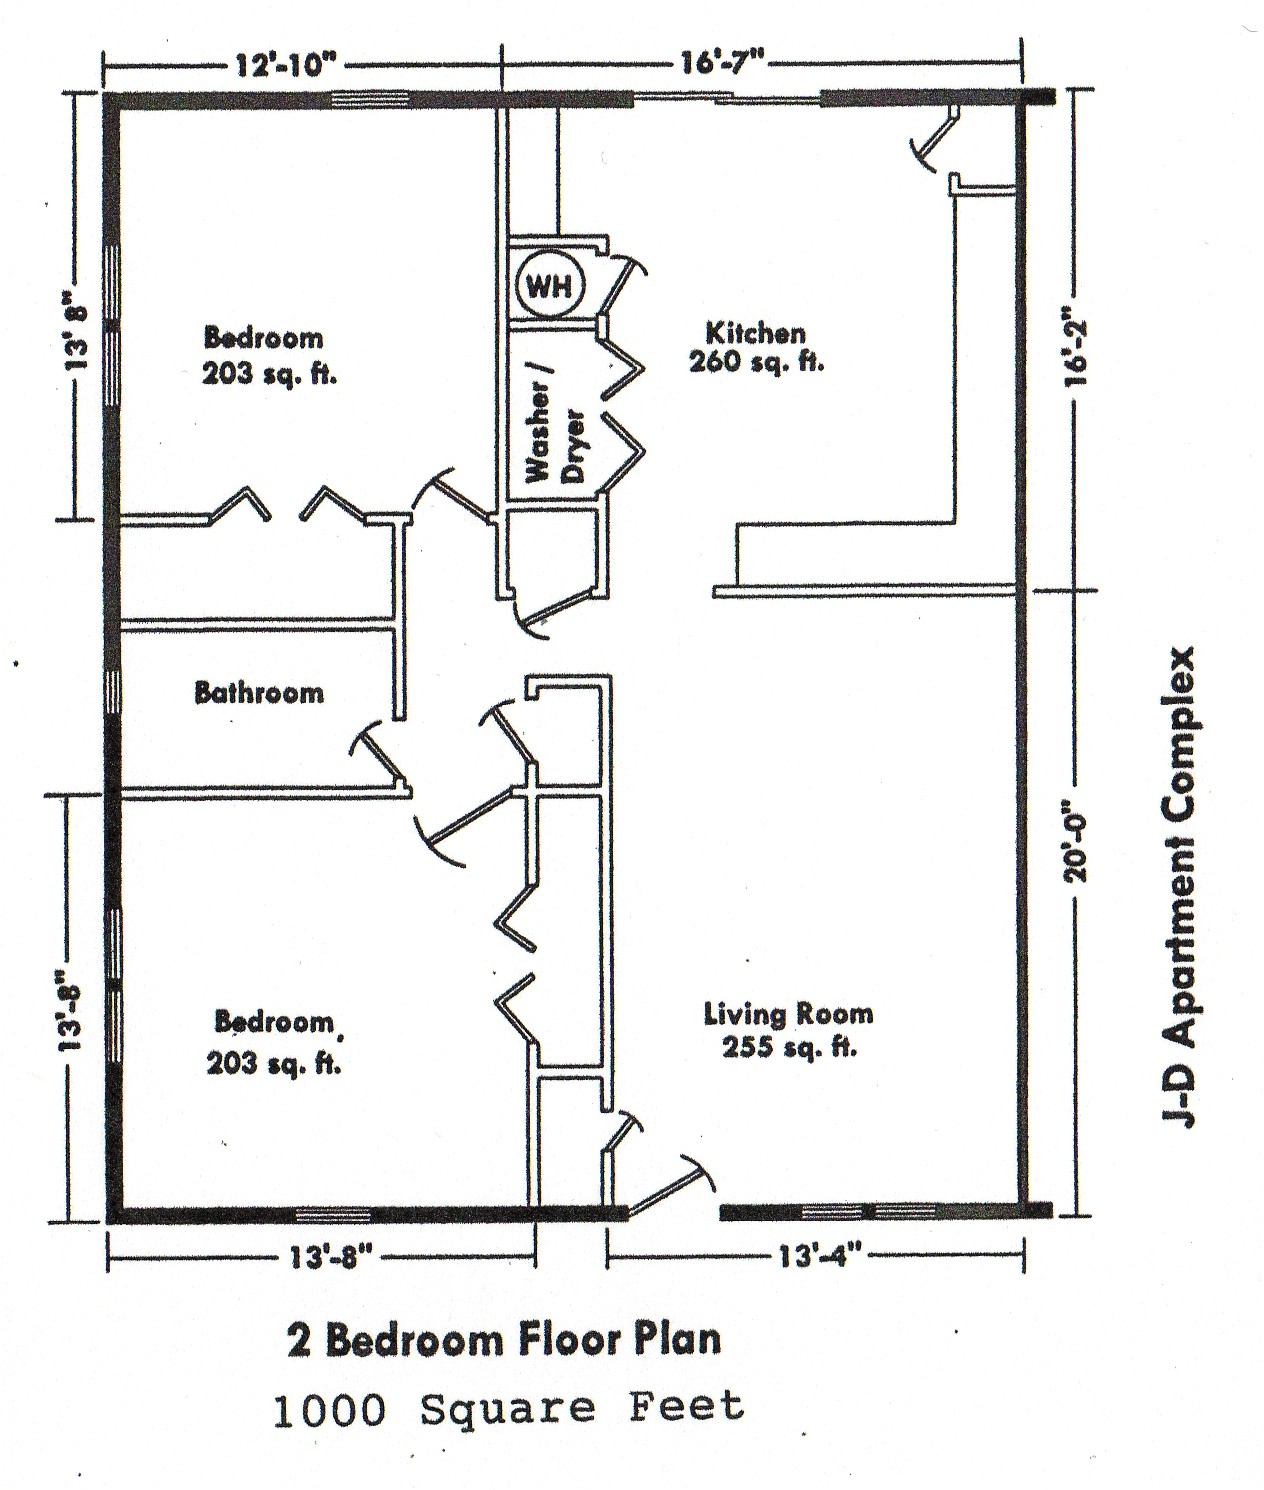 modular homes 2 bedroom floor plans